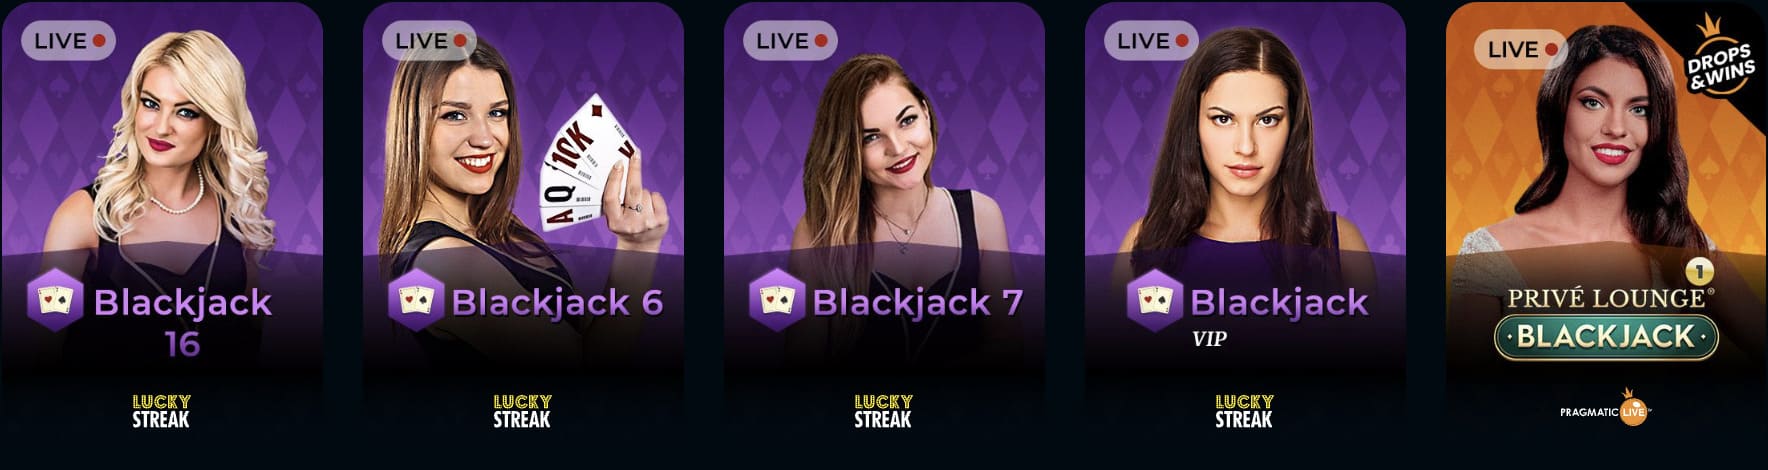 Blackjack at RocketPlay Casino